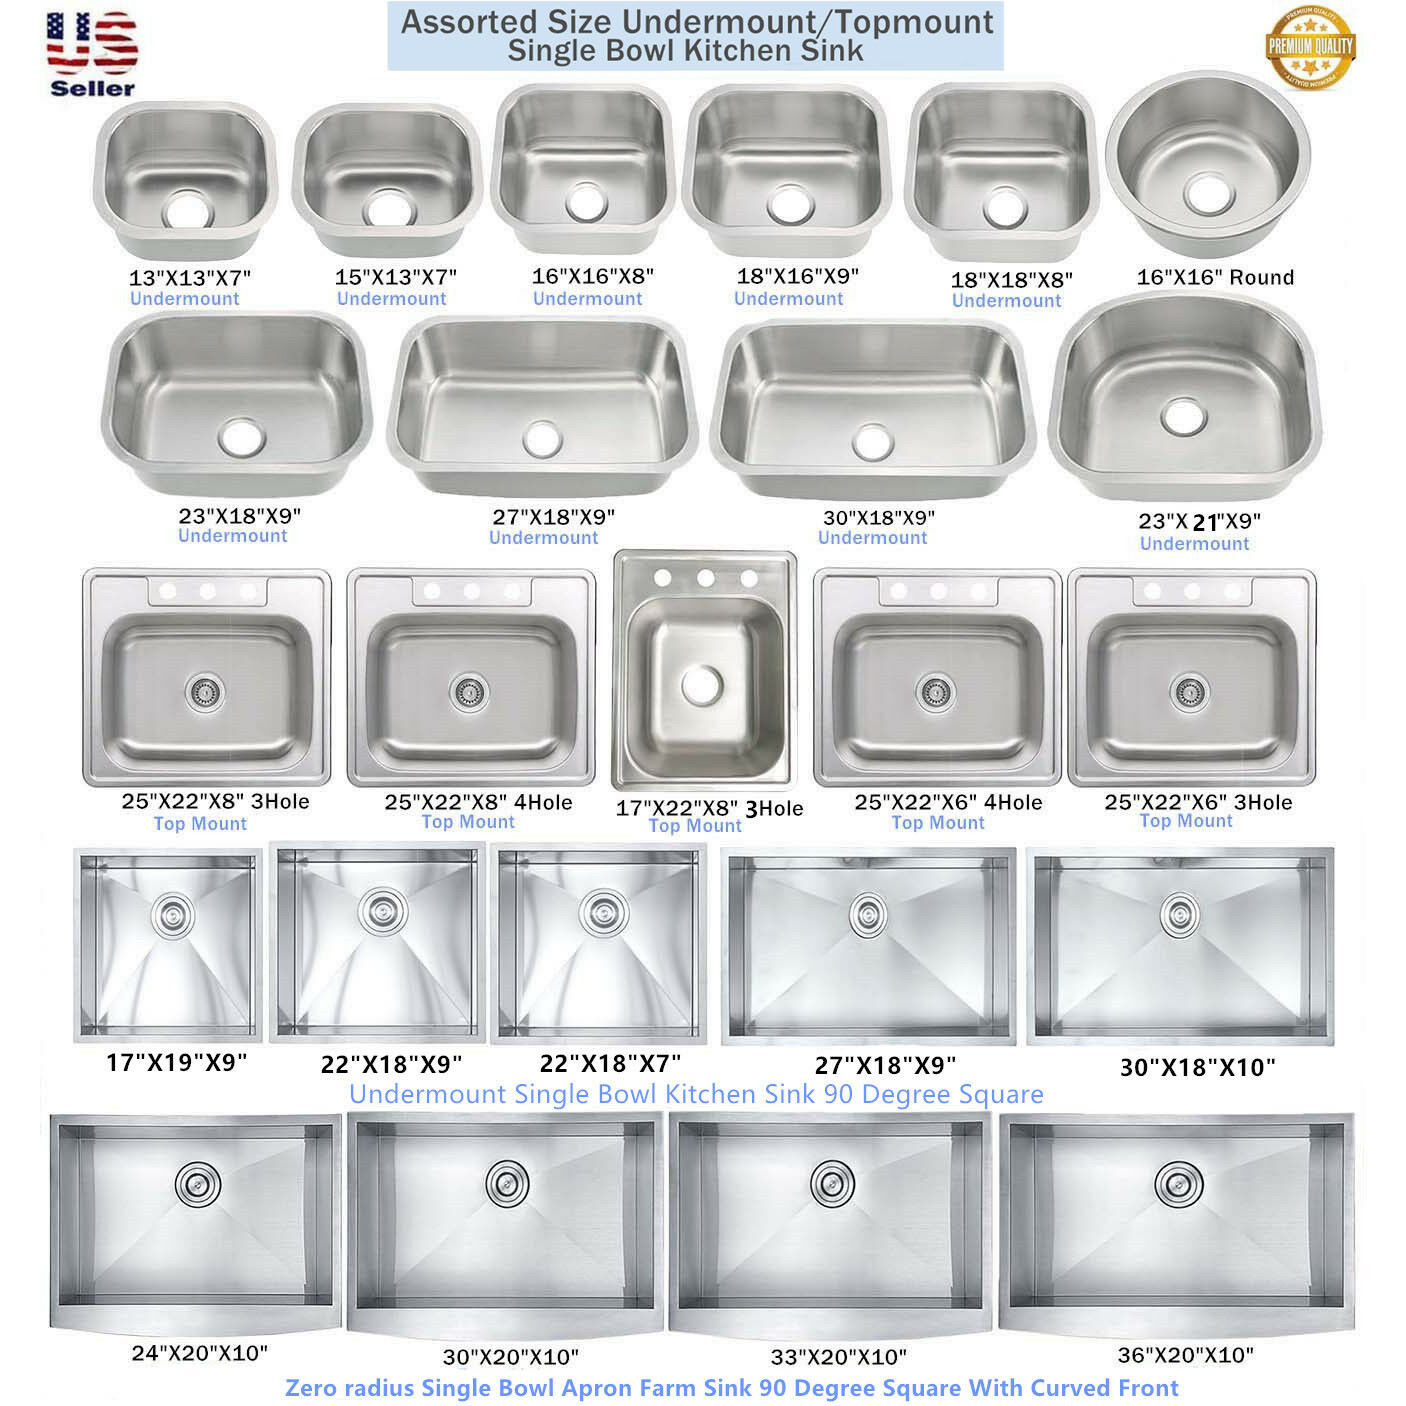 Stainless Steel Single Bowl Topmount / Undermount Kitchen Sink Multiple Size